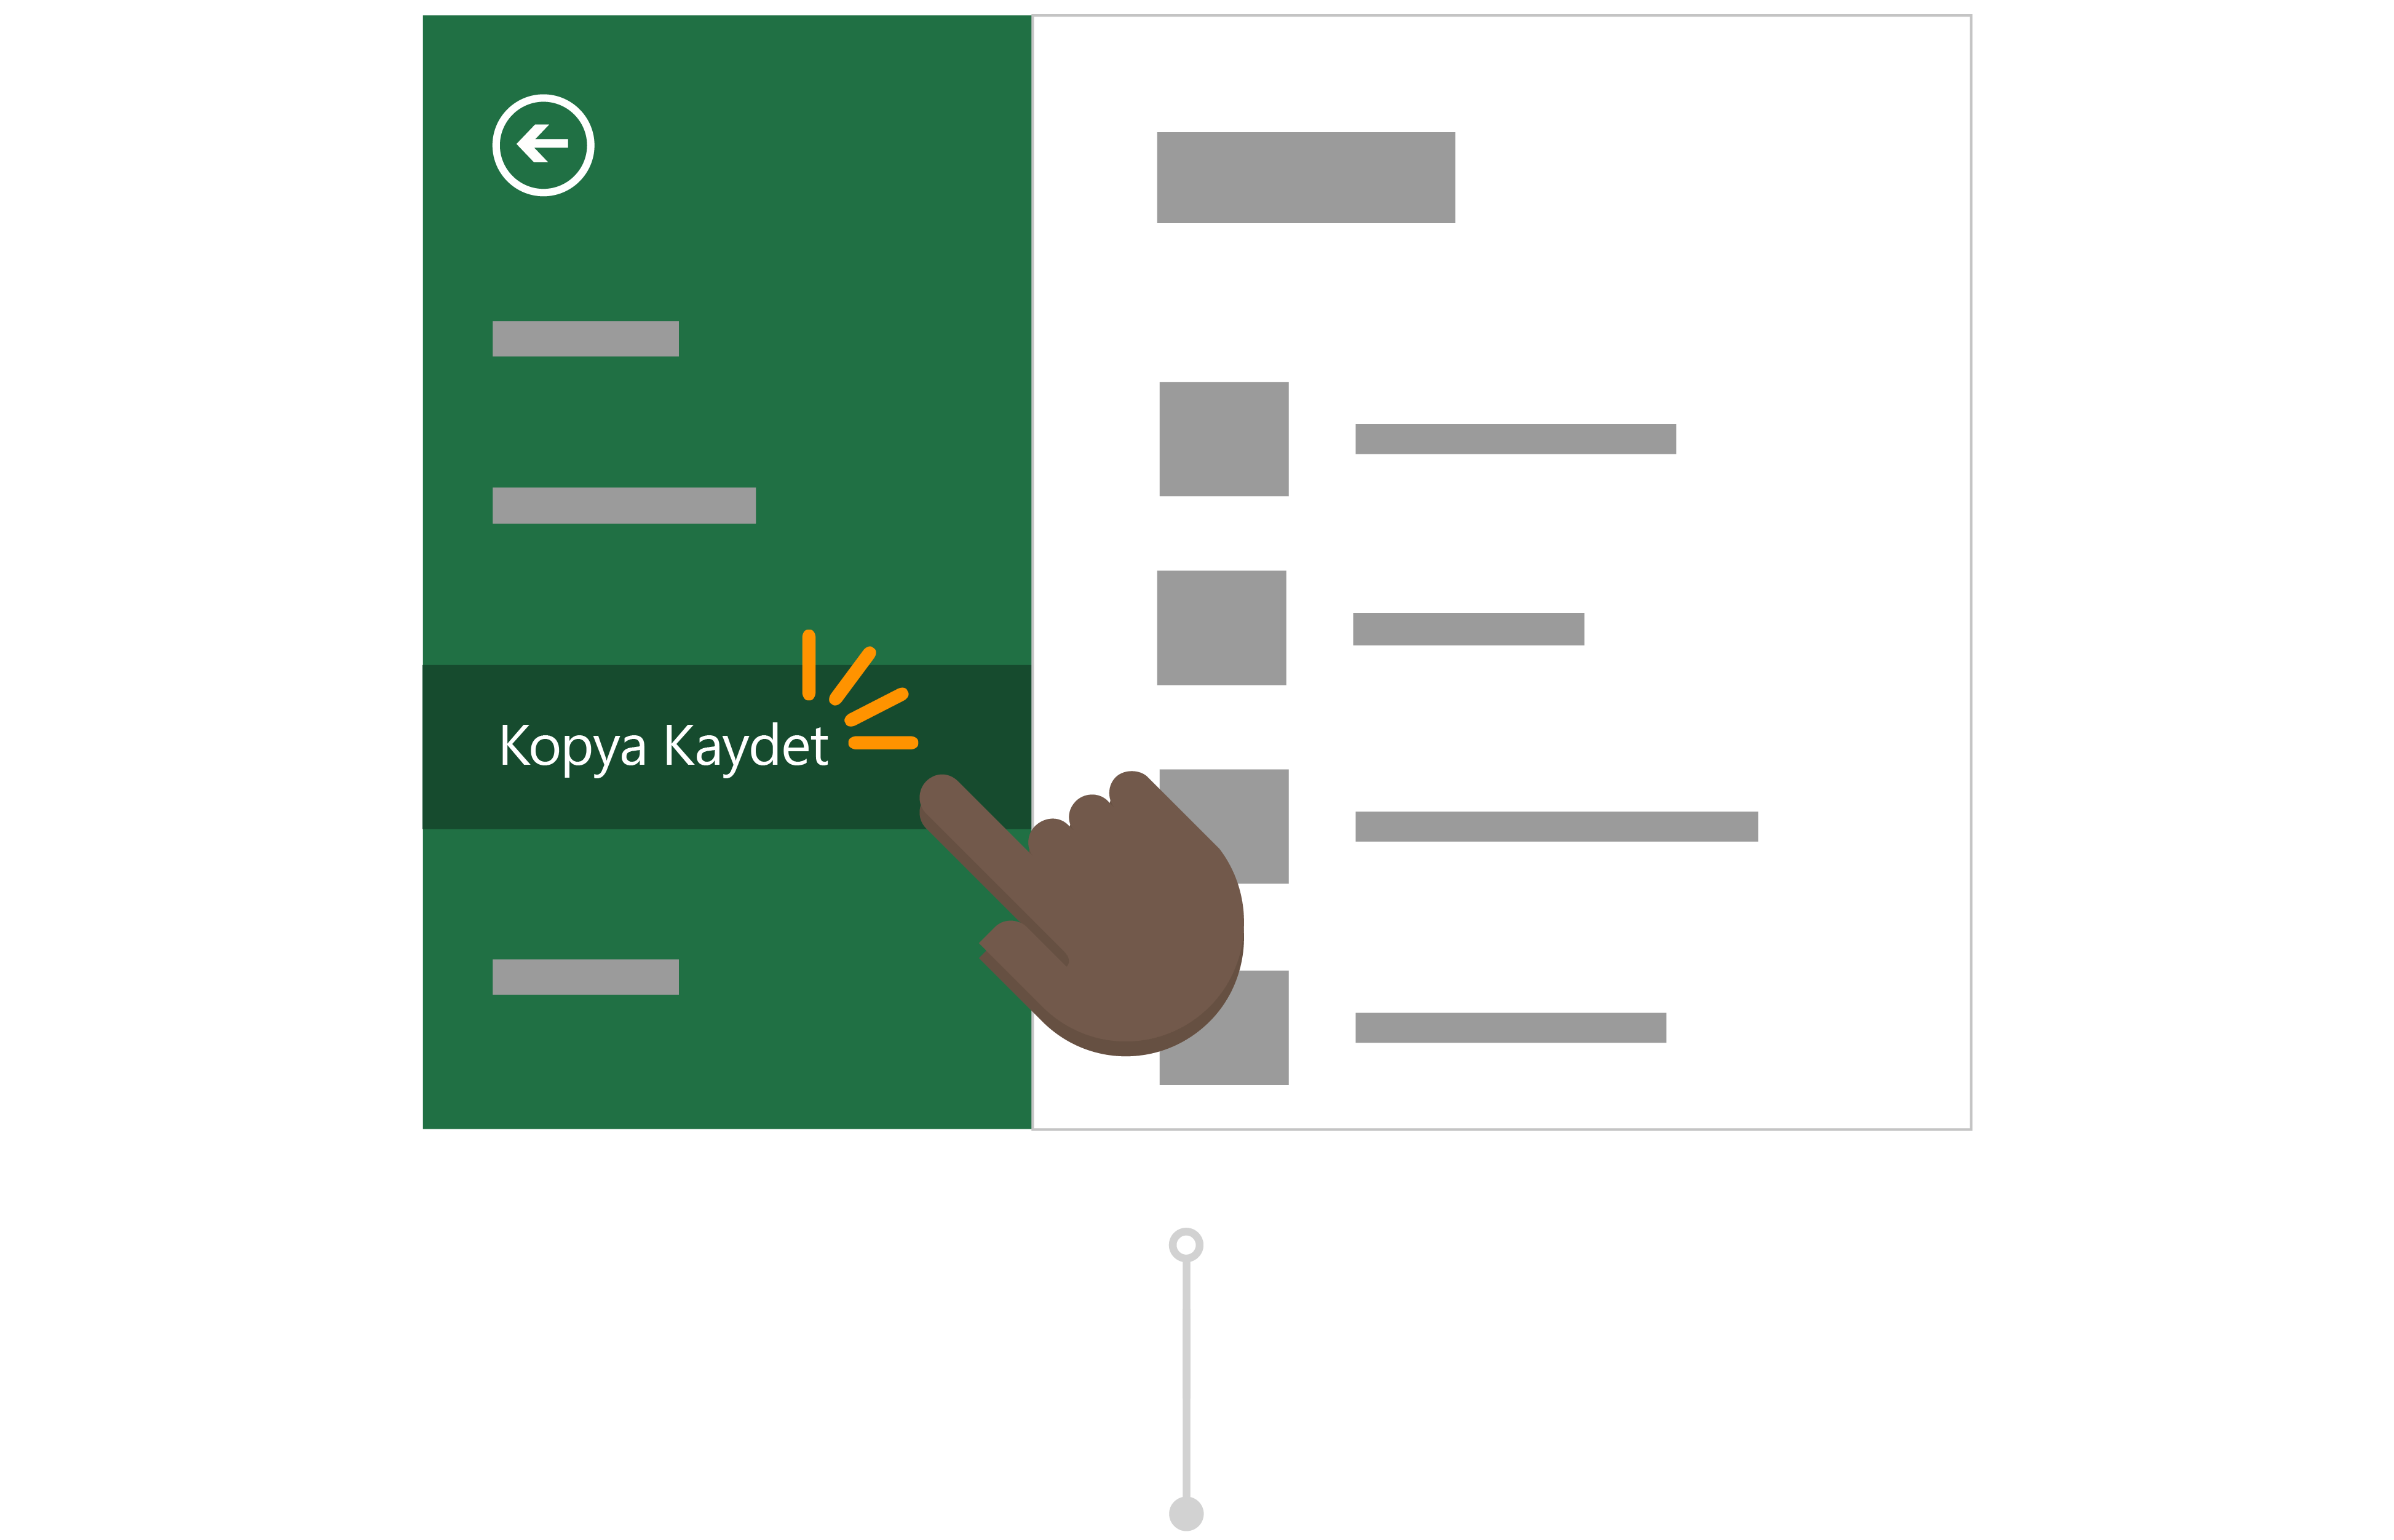 Ayrıca, Raporu Kendi OneDrive'larında kaydetmek için Kopyasını Kaydet'i kullanır.